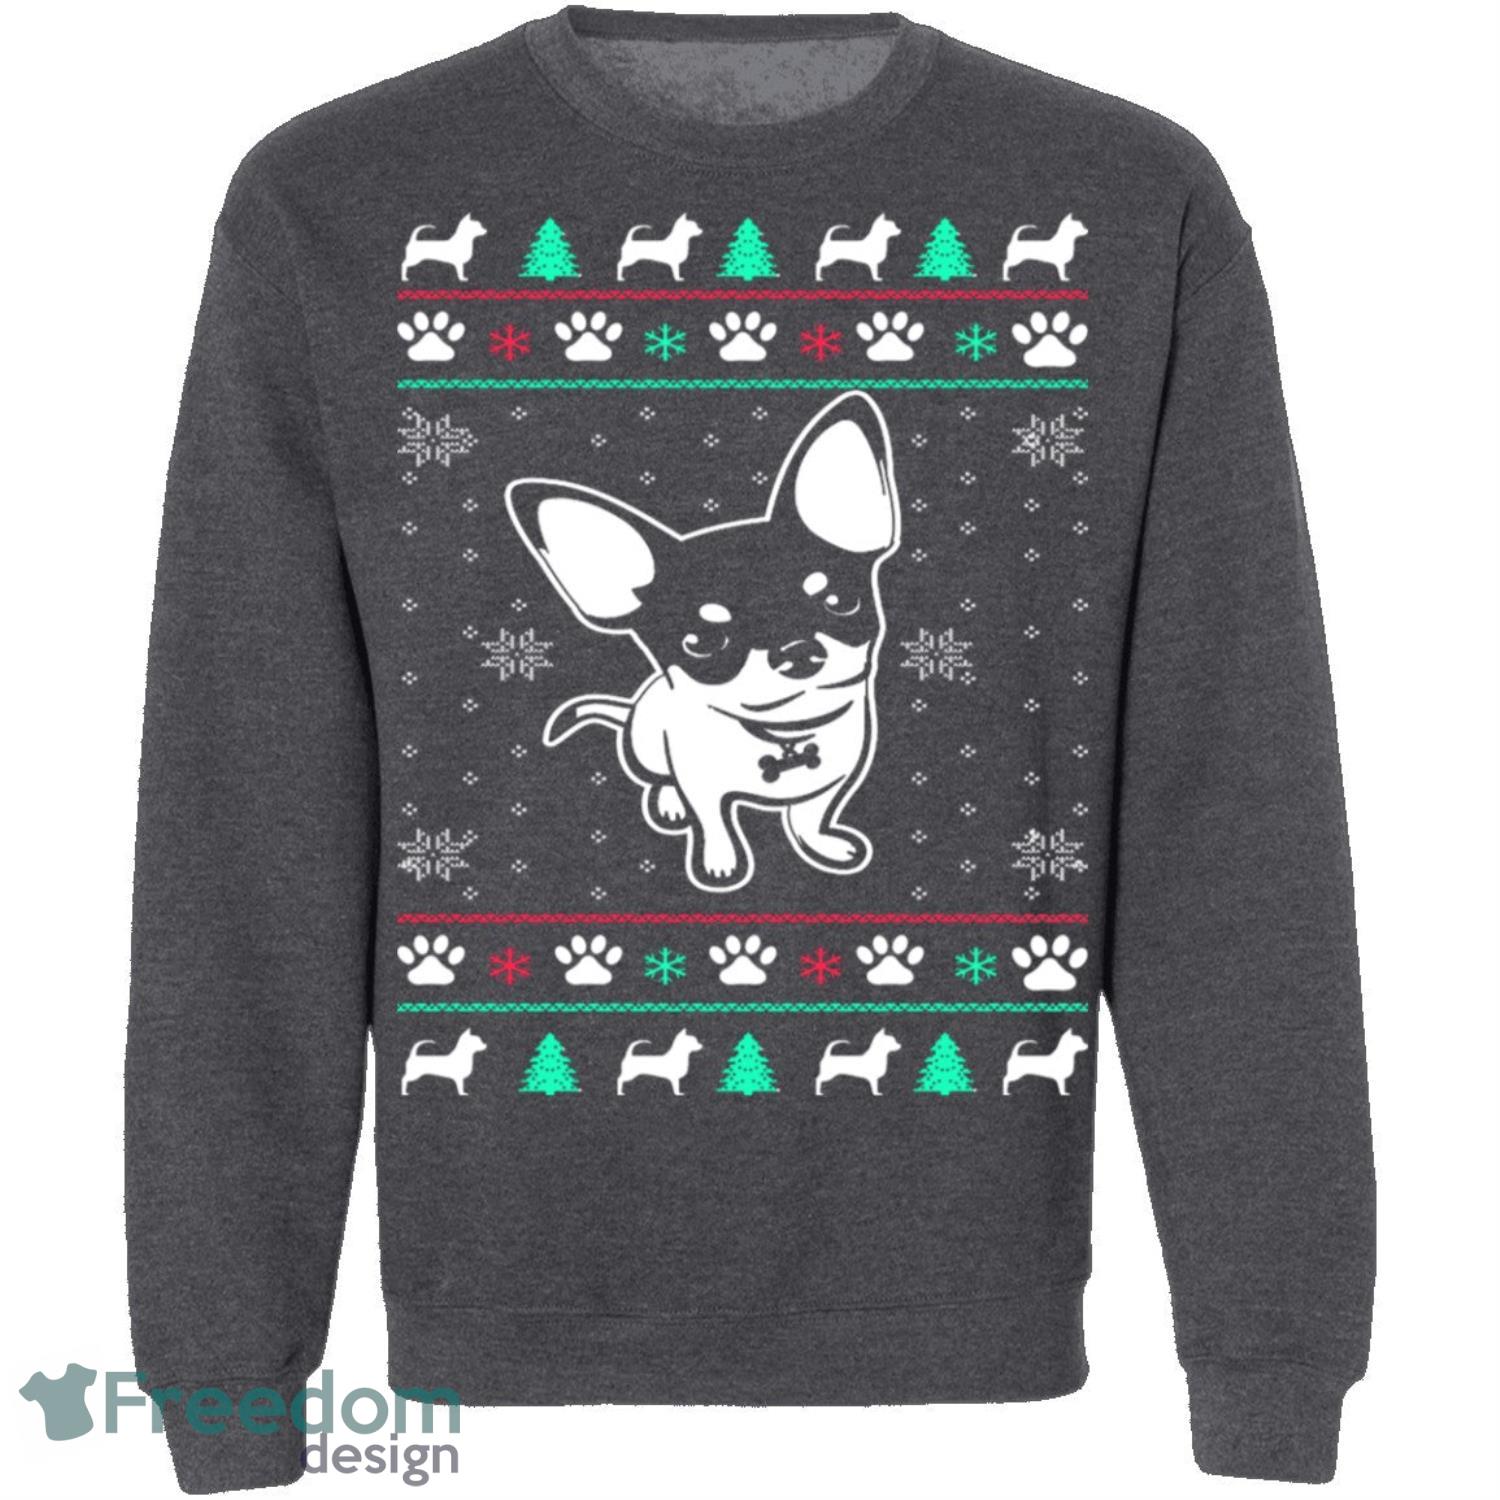 Chihuahua Knitting Pattern Ugly Christmas Sweatshirt - chihuahua-knitting-pattern-ugly-christmas-sweatshirt-1